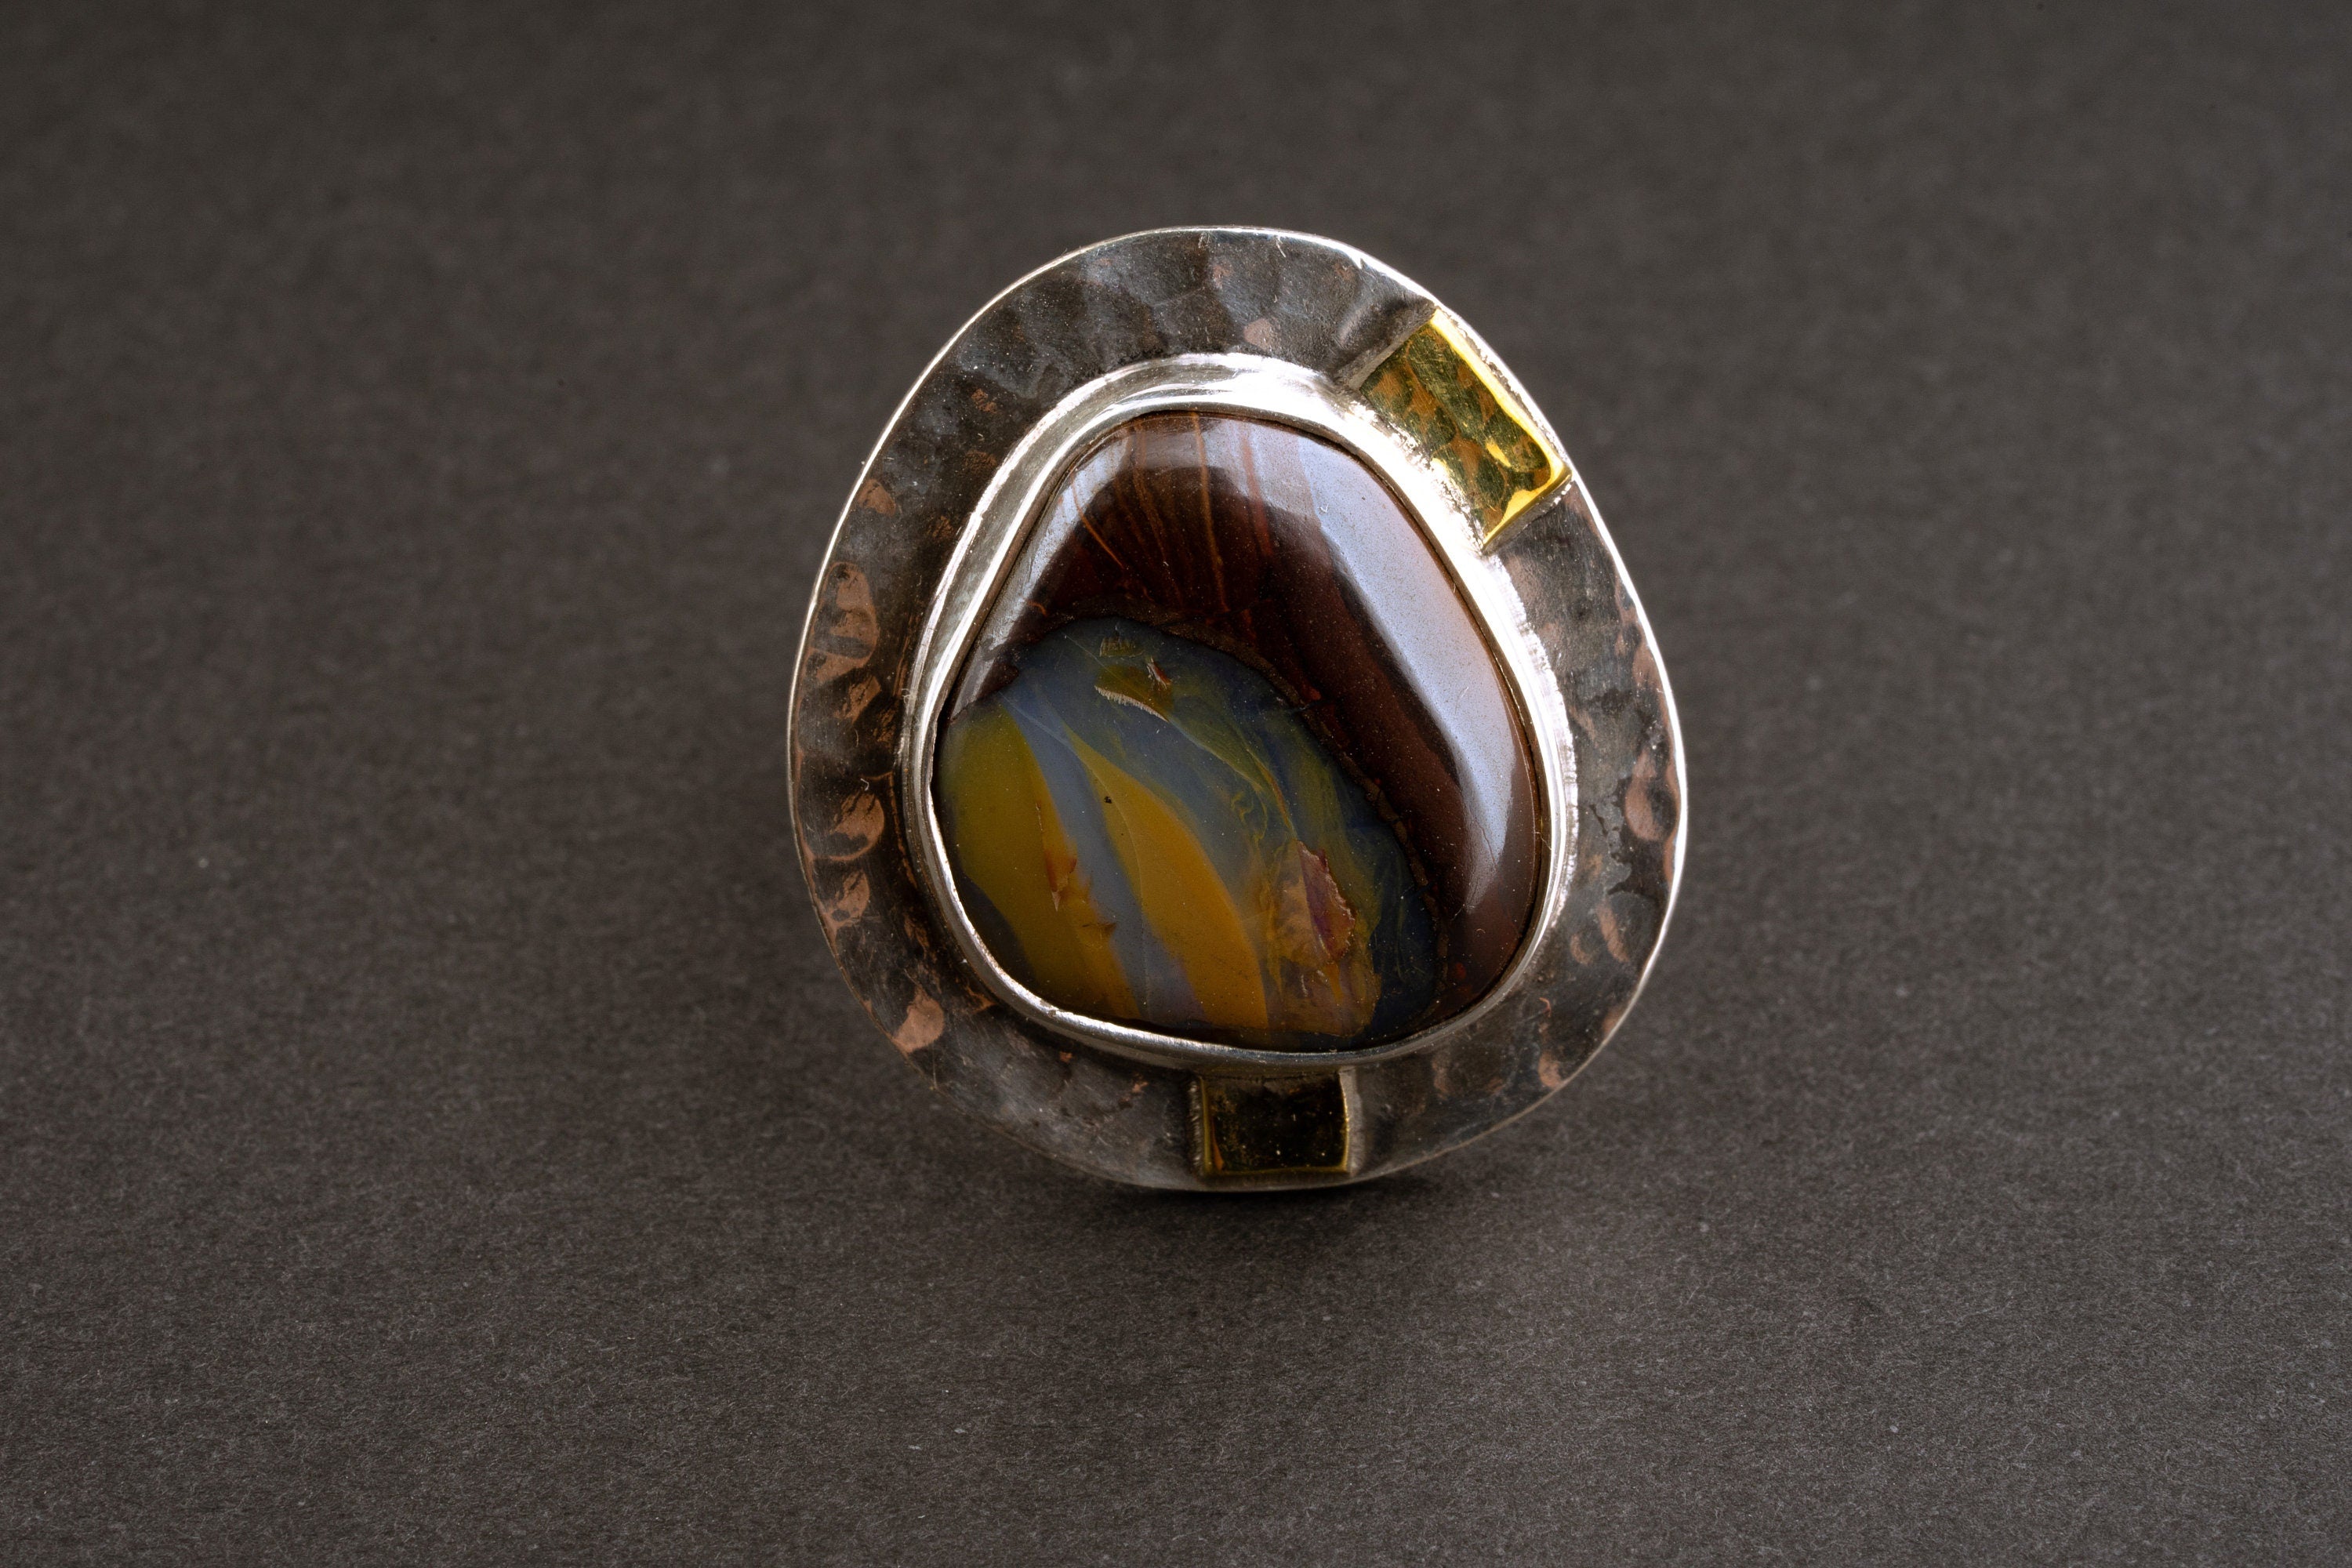 Ecliptic Radiance - Australian Boulder Opal - Unisex - Size 5-12 US - Large Adjustable Sterling Silver Ring